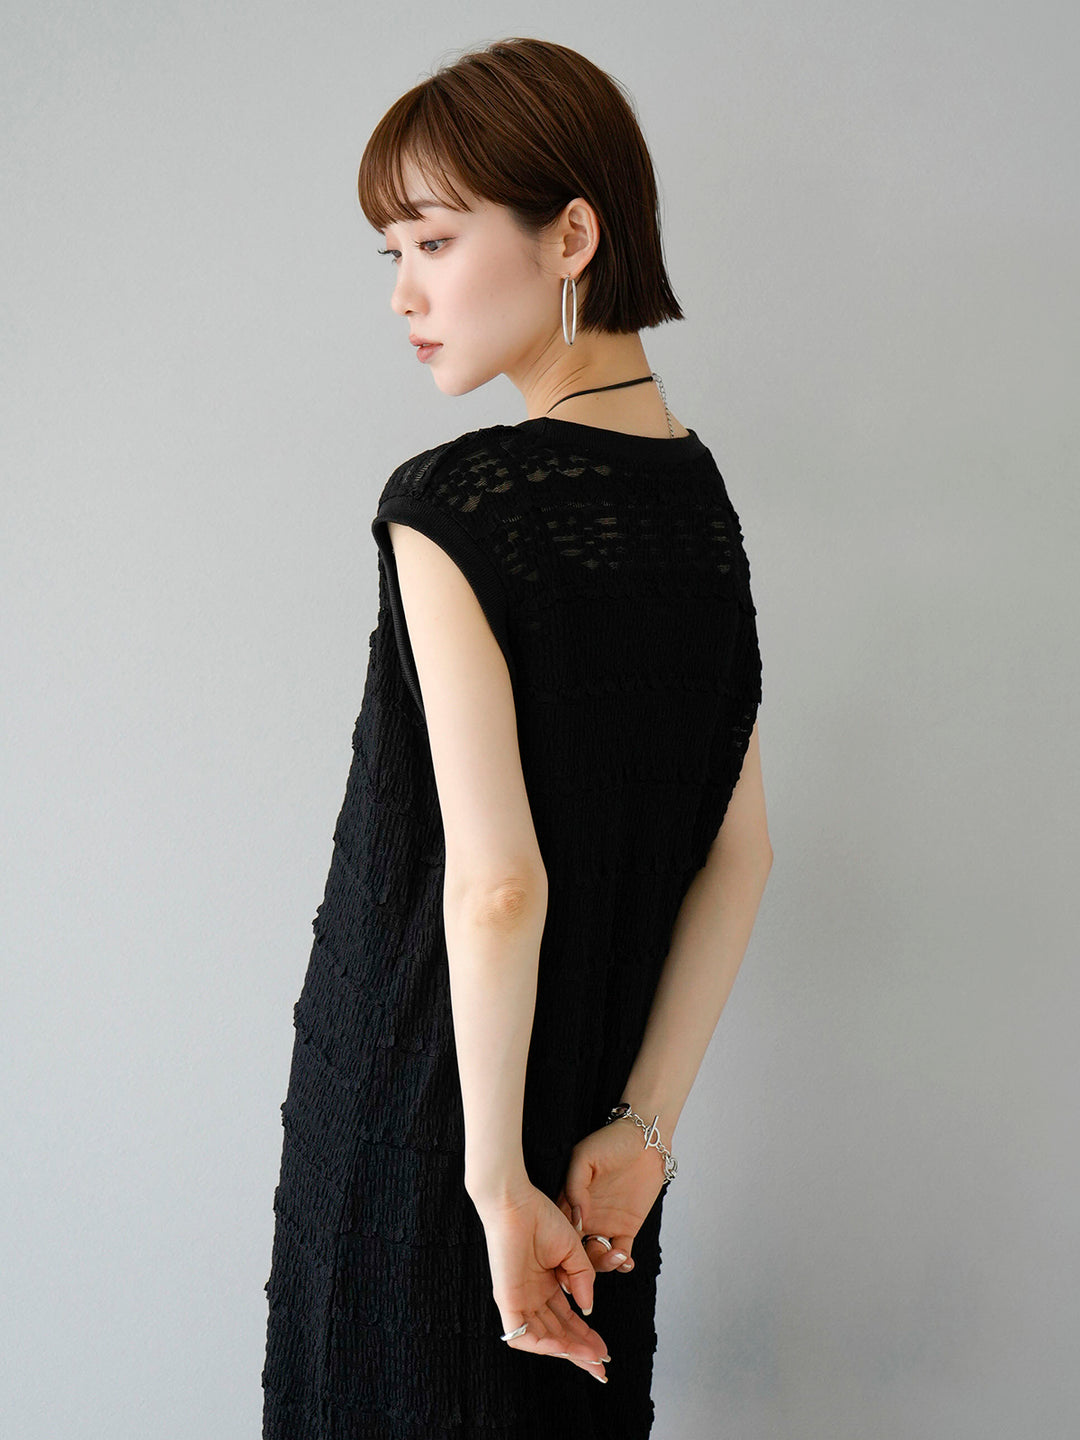 [SET] Border lace sleeveless dress + choice of necklace set (2 sets)